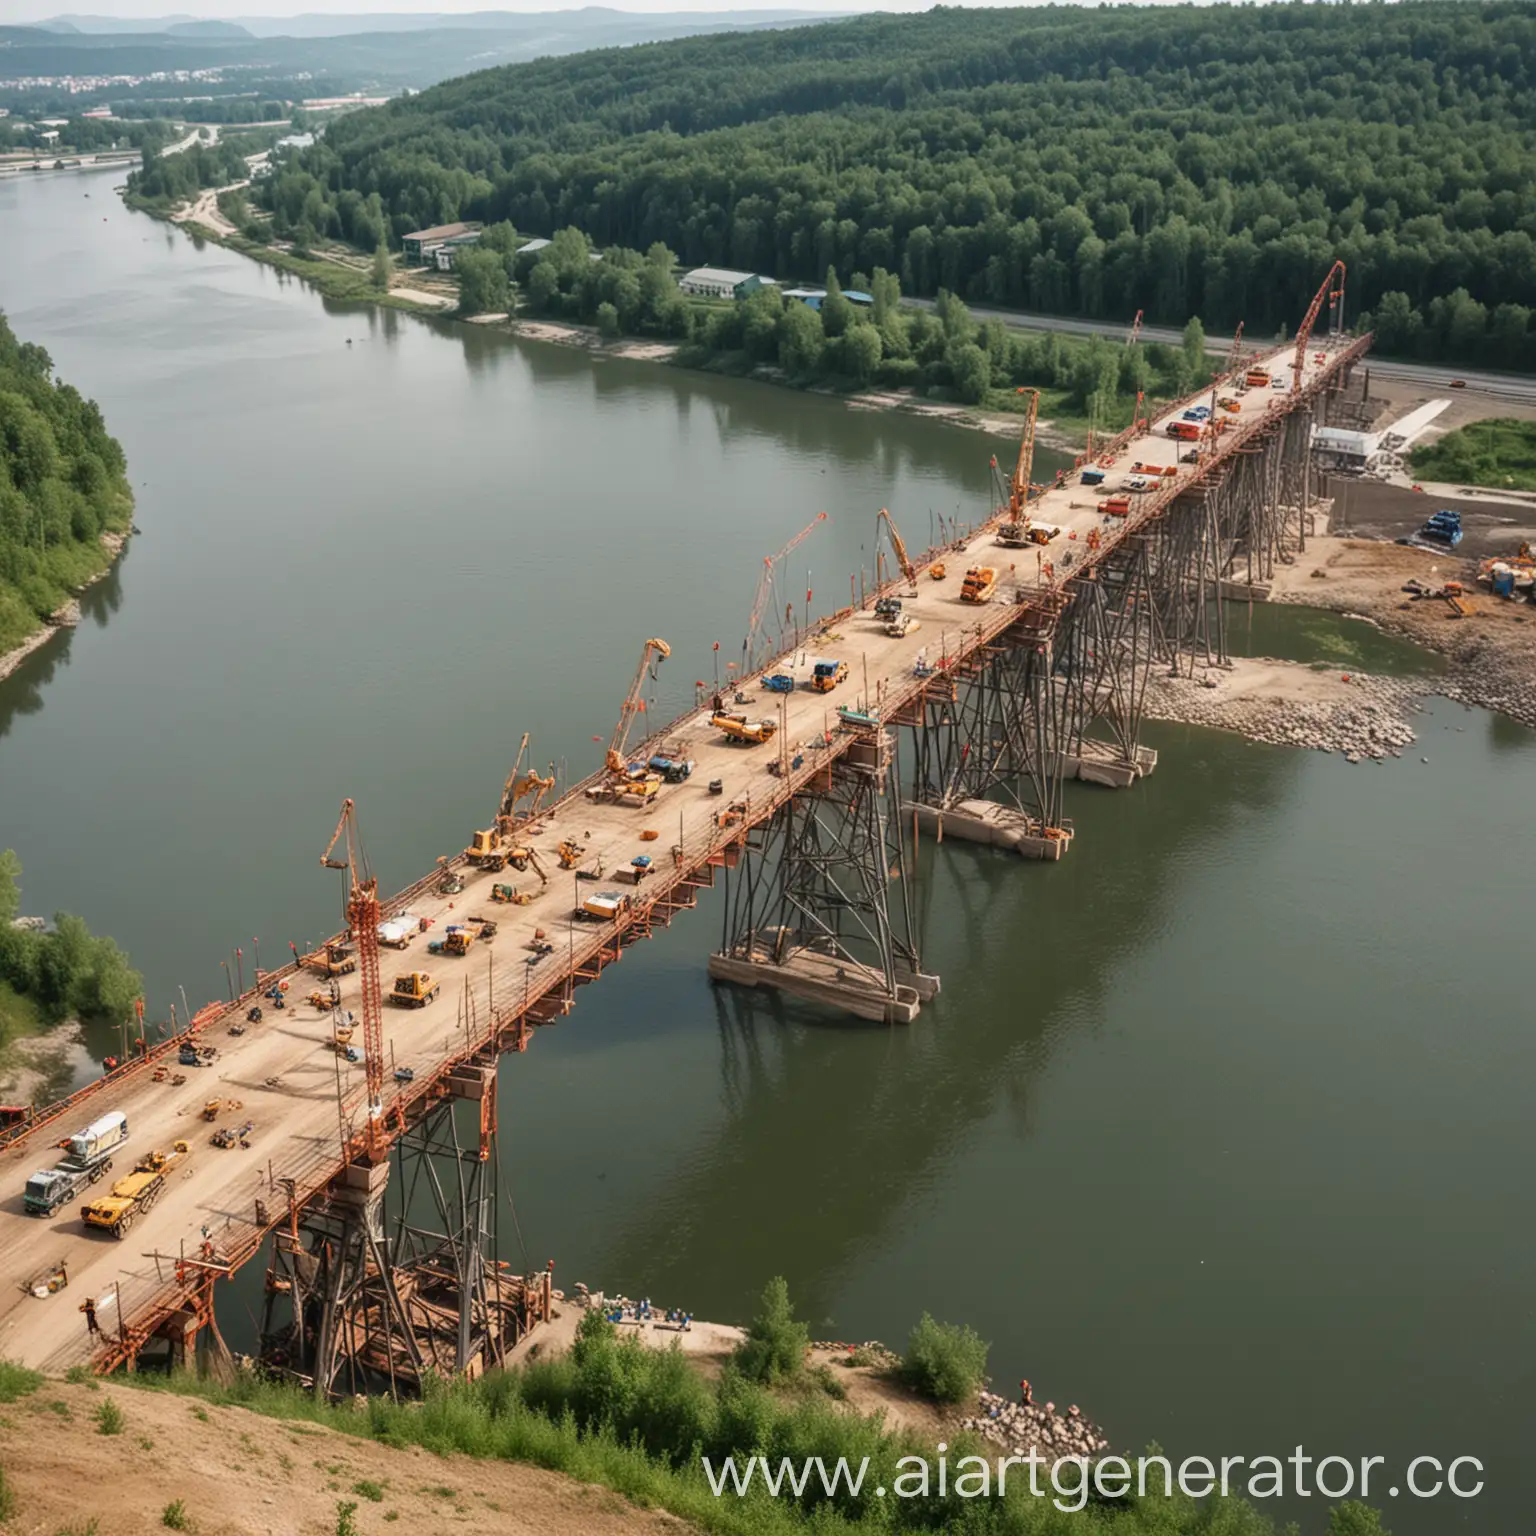 River-Bridge-Construction-Workers-Building-Bridge-Over-Waterway